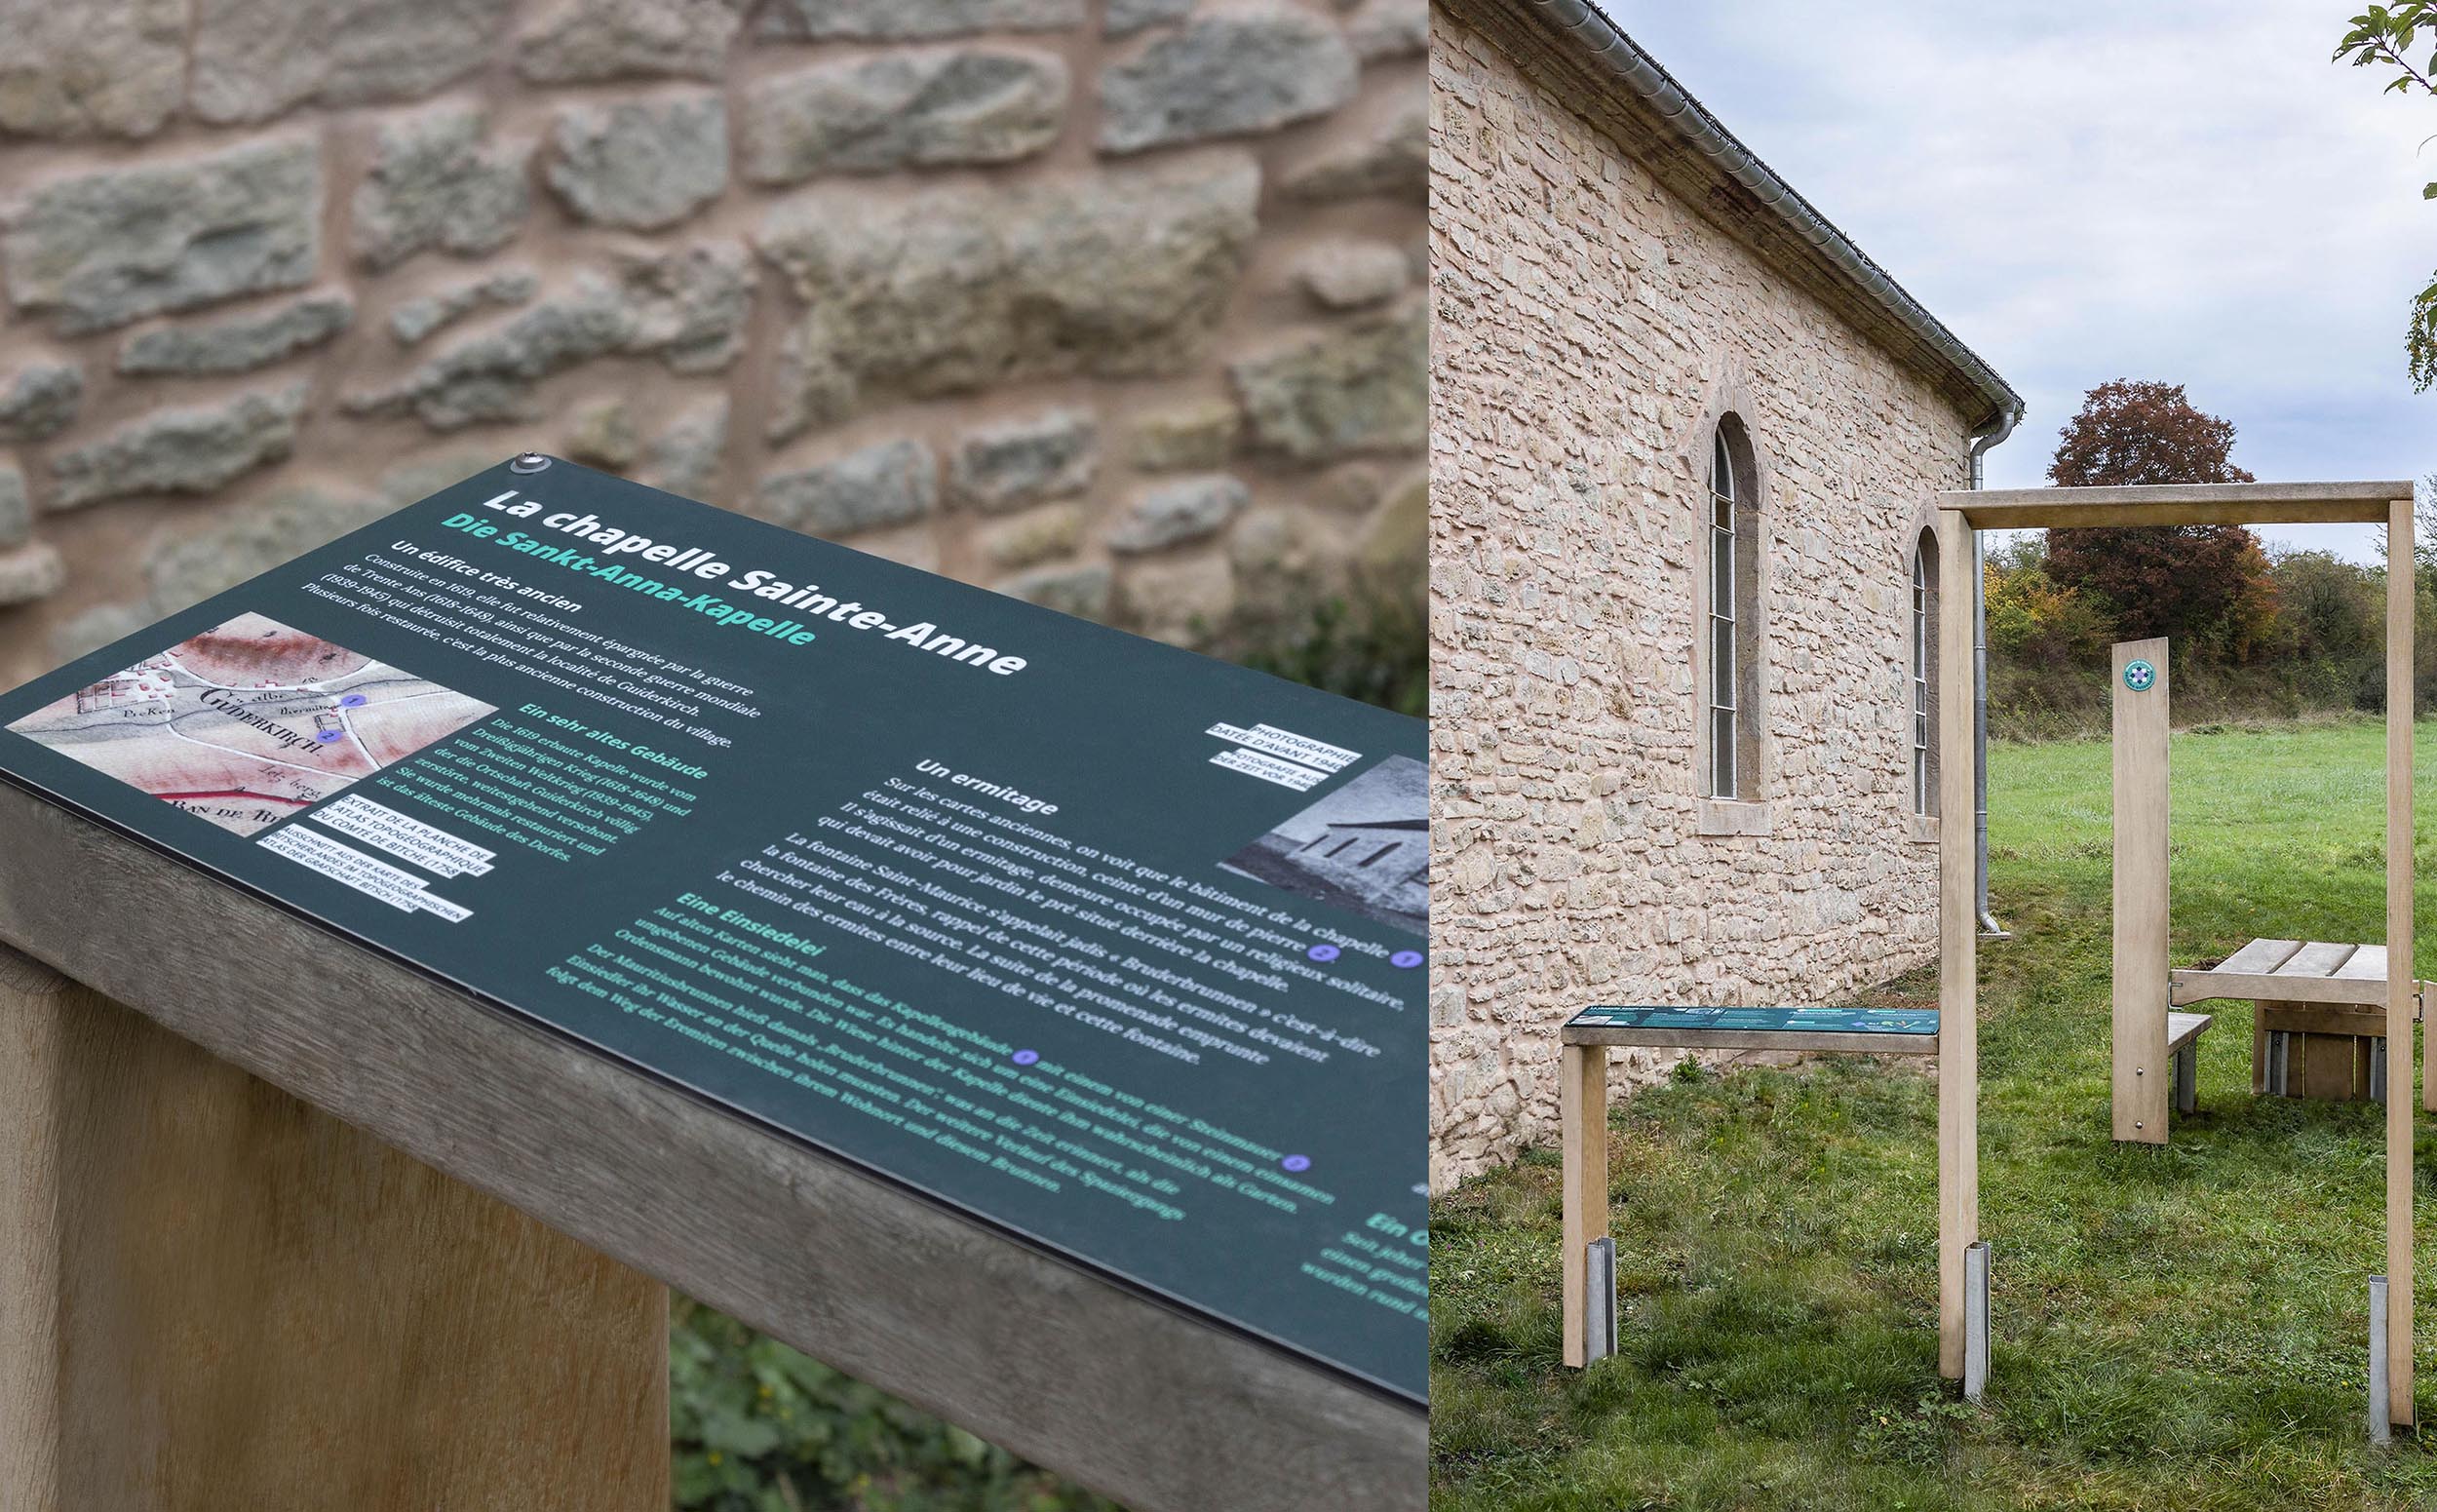 2 photos des installations documentaires à côté de la chapelle Sainte-Anne : un pupitre historique sur l'histoire des lieux, et une arche symbolique pour matérialiser l'entrée dans l'ancien potager de l'ermitage.